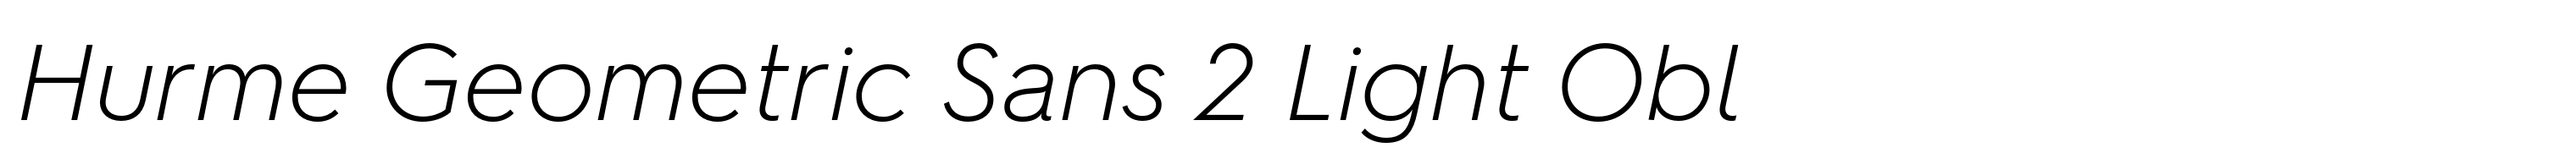 Hurme Geometric Sans 2 Light Obl